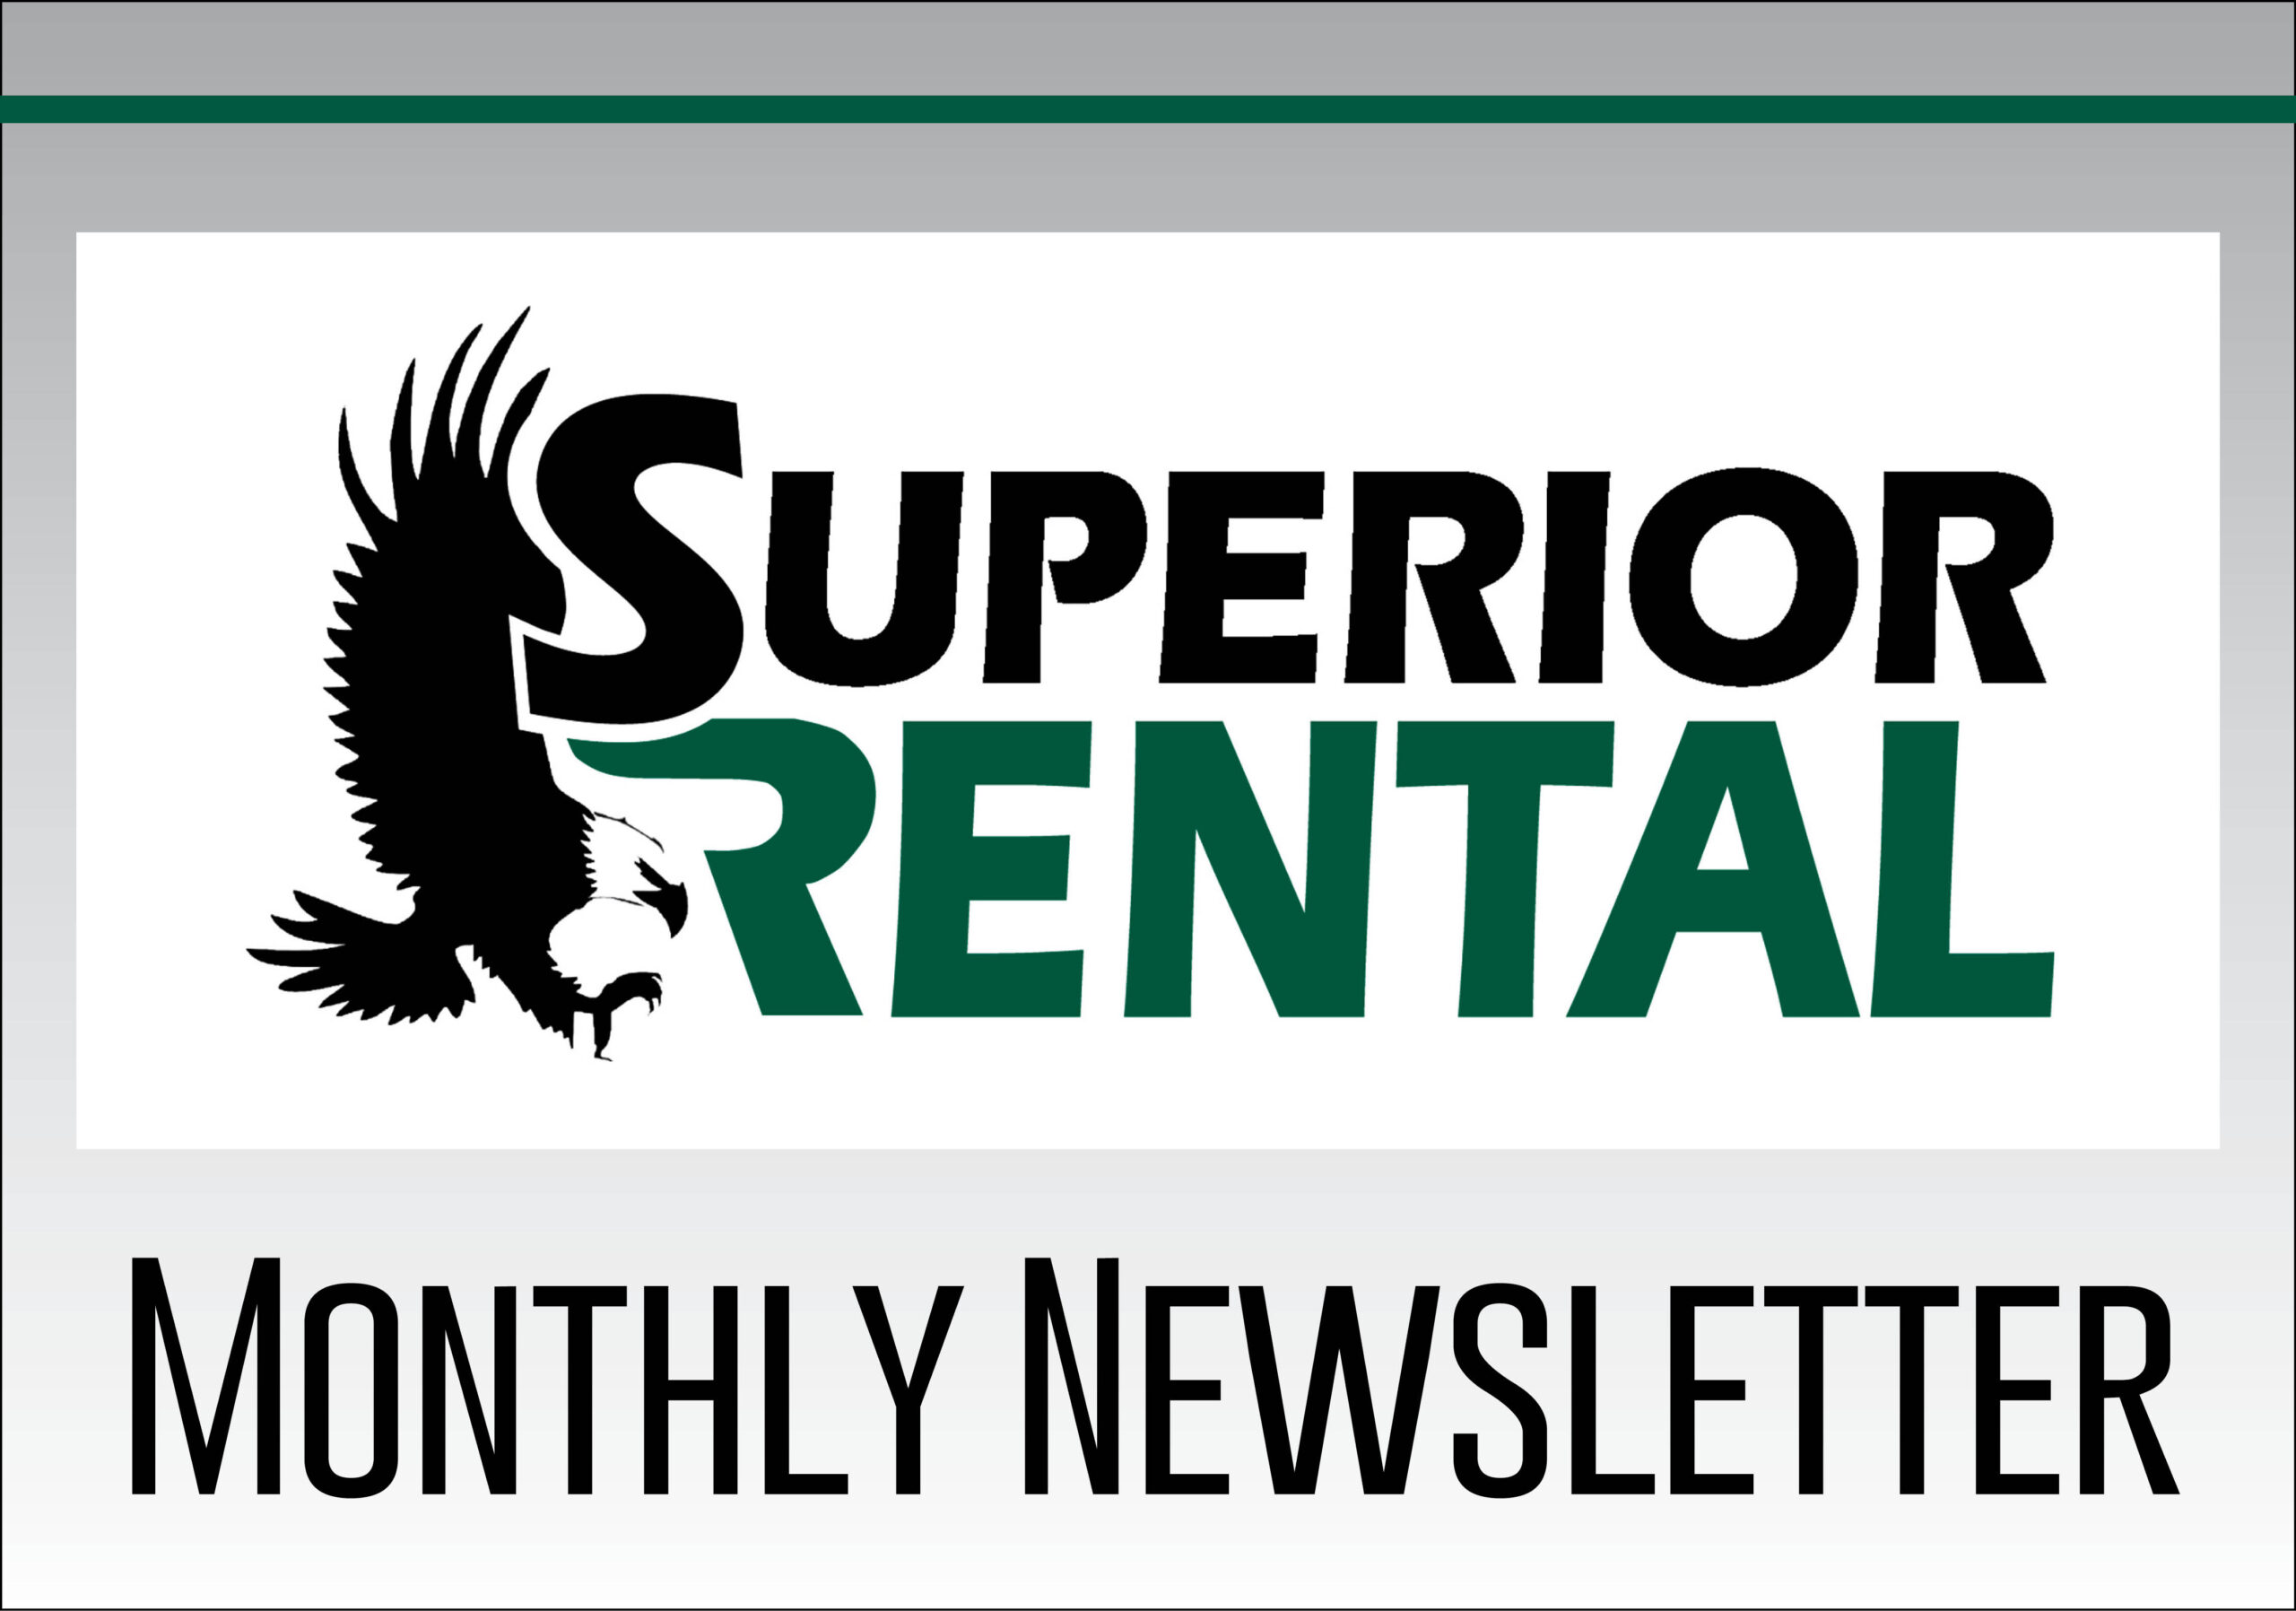 Rental Newsletter!